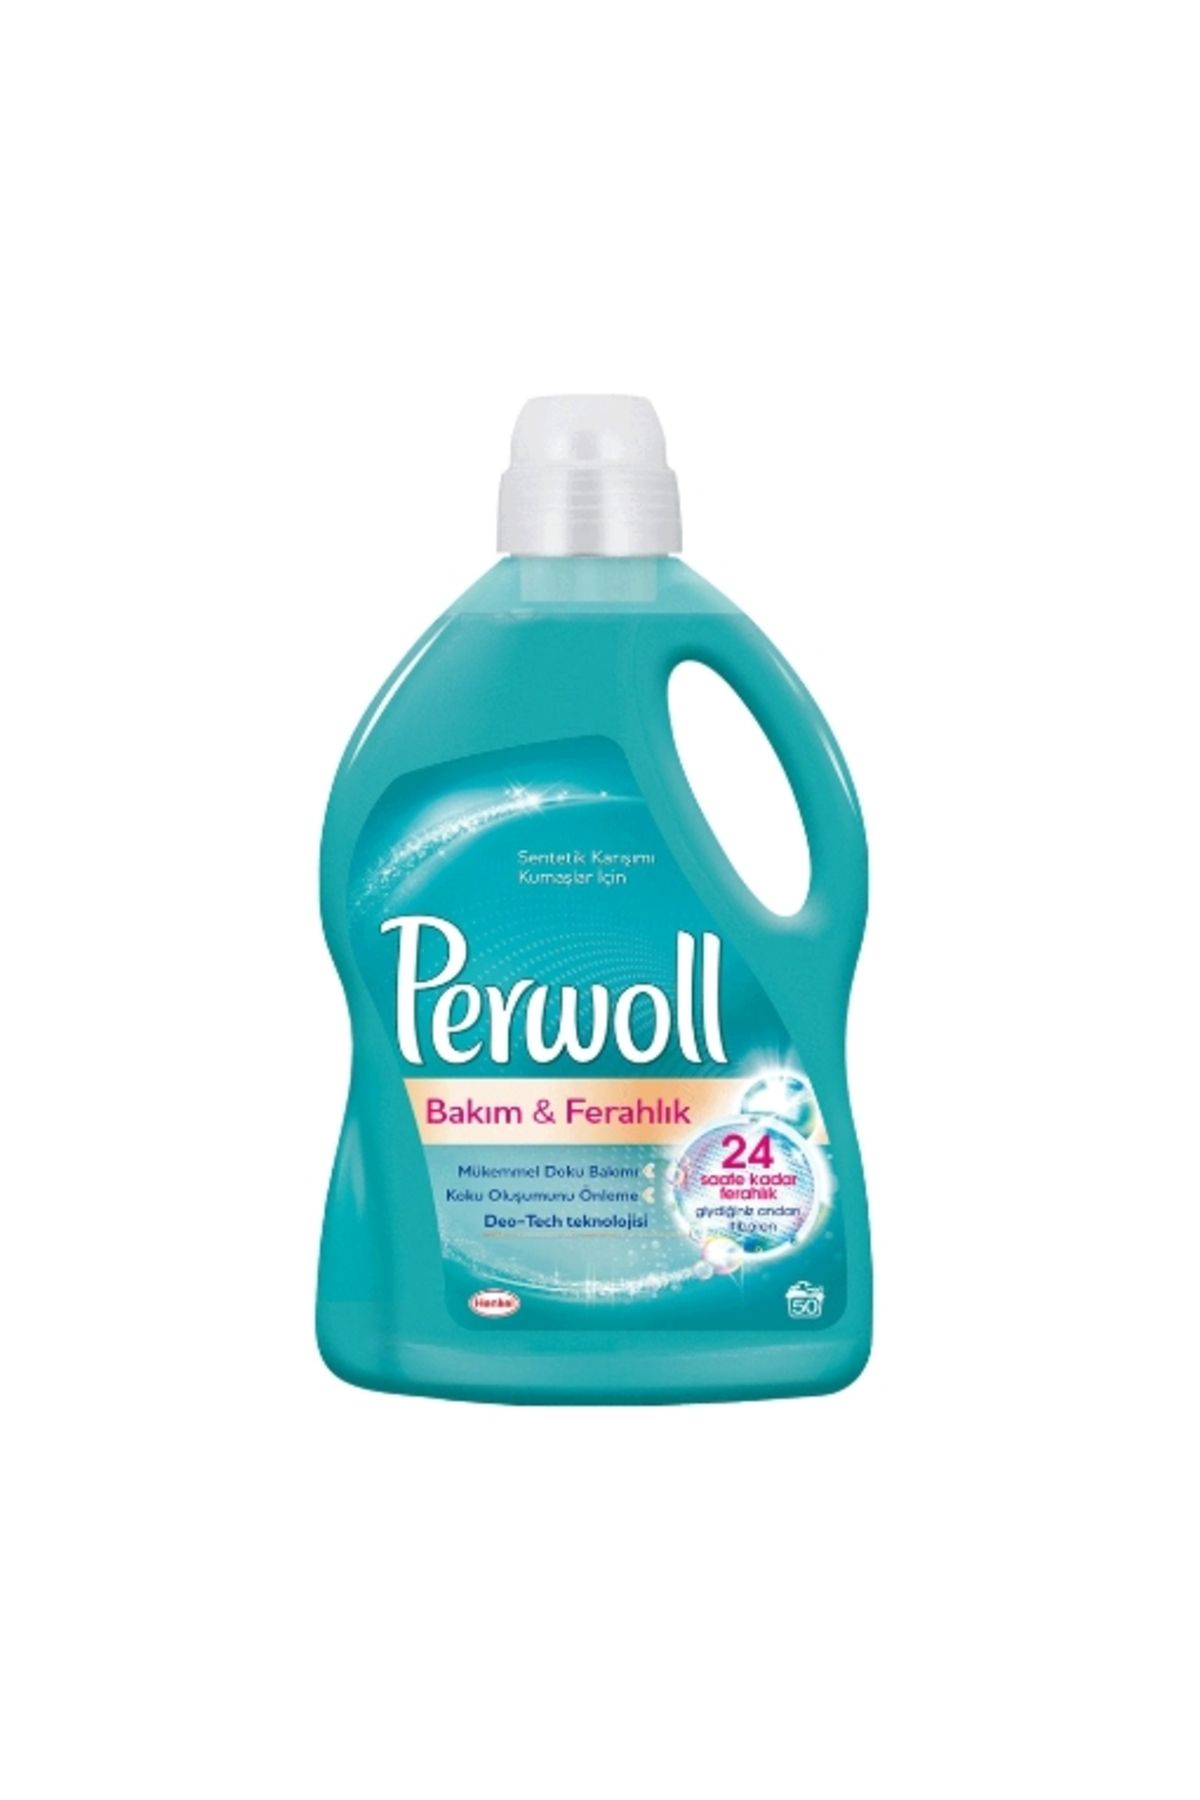 Perwoll Sıvı Çamaşır Deterjanı 2,97 Lt. Bakım & Ferahlık 50 W